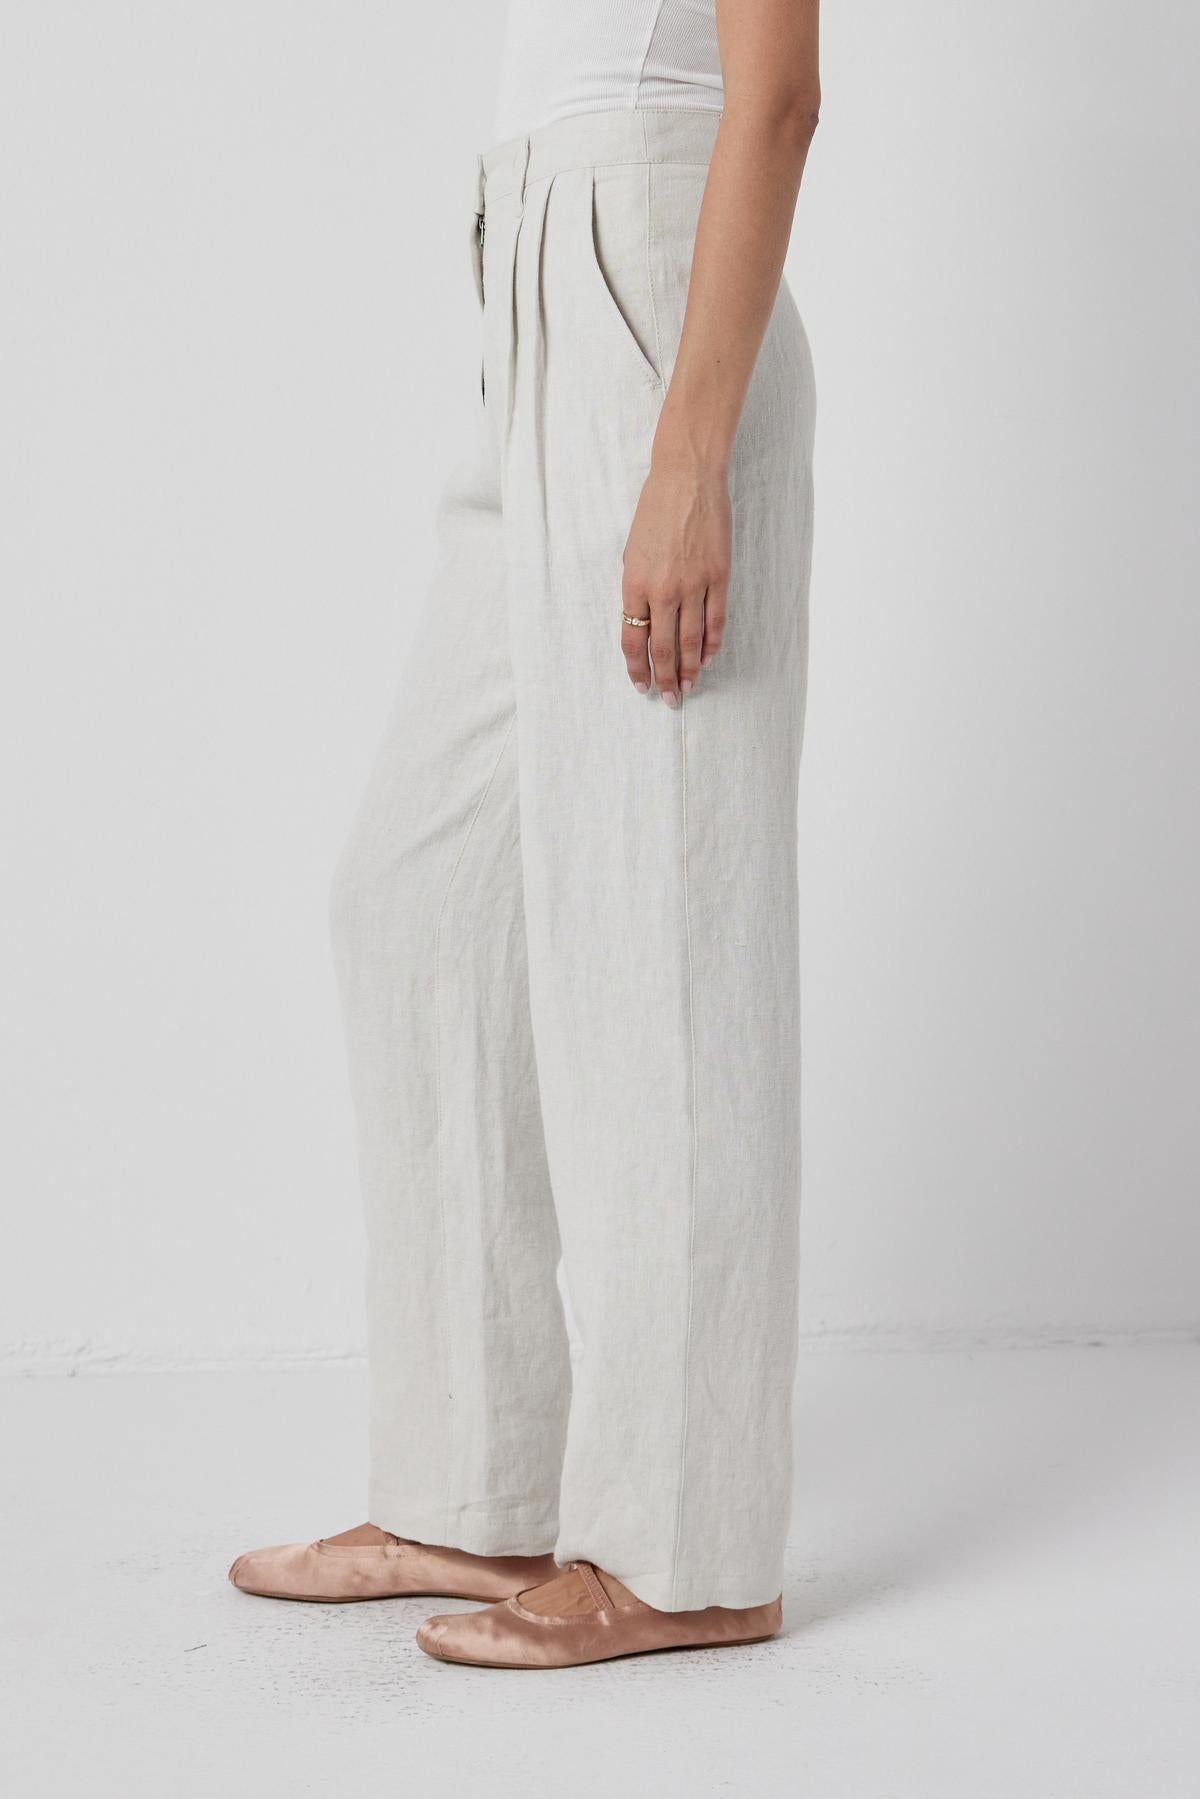   The model is wearing Velvet by Jenny Graham's white linen Pomona pants. 